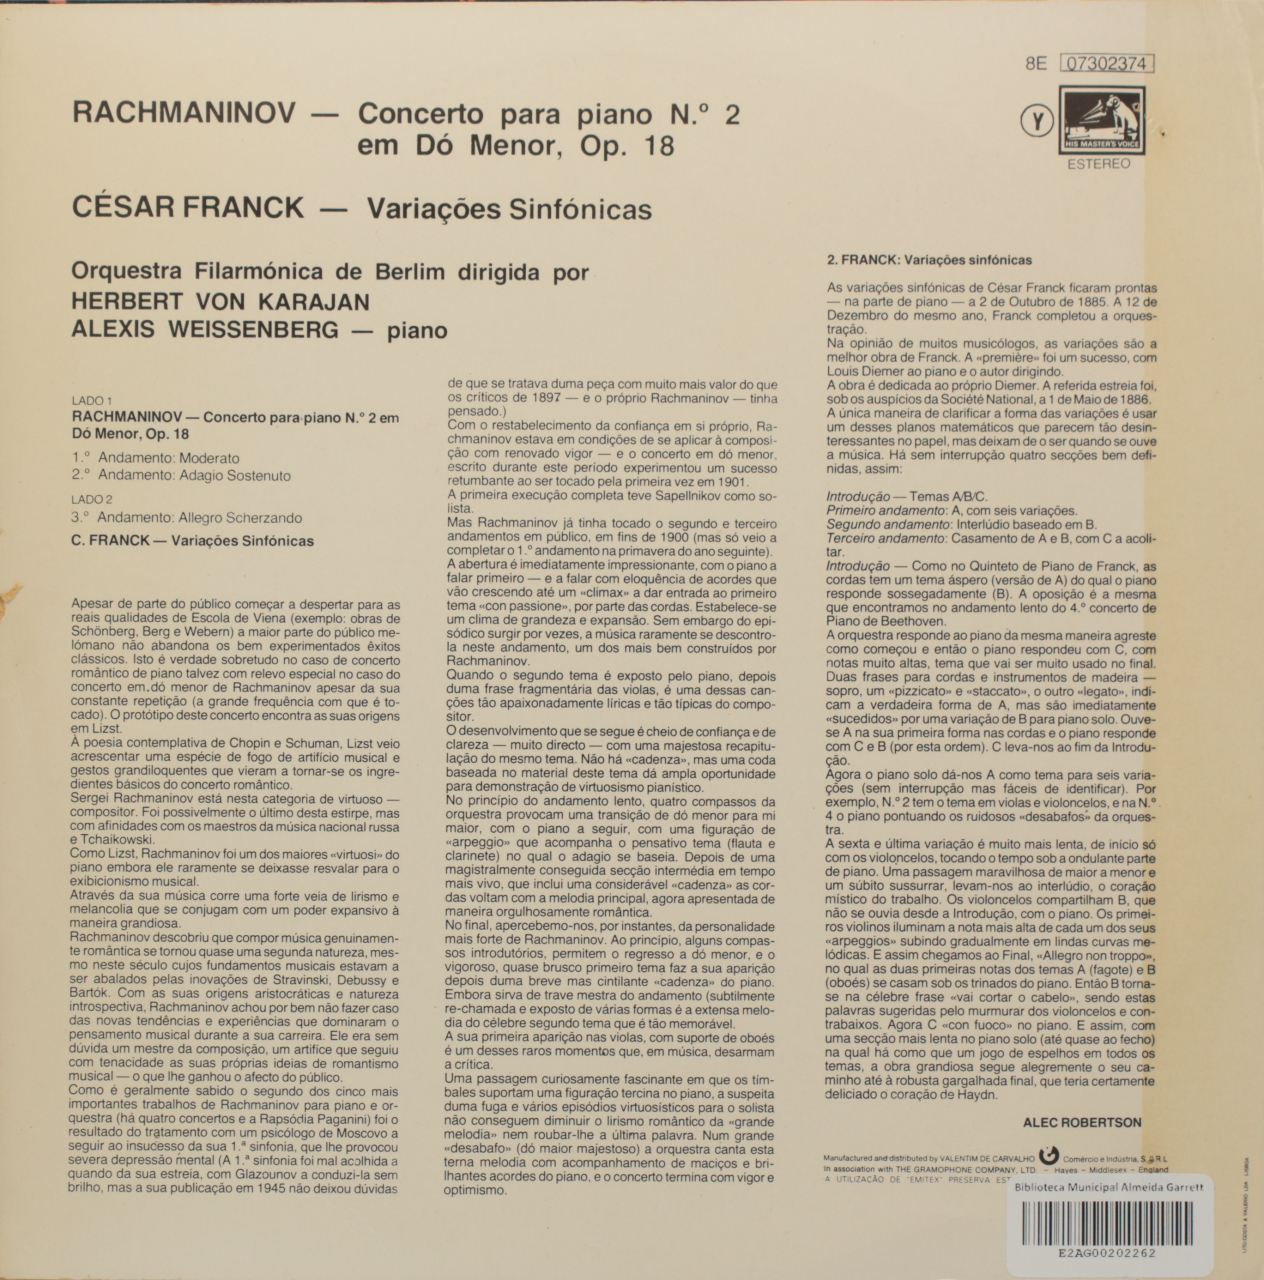 Rachmaninoff: Concerto para Piano nº 2 em Dó menor, Op. 18 / Franck: Variações sinfónicas